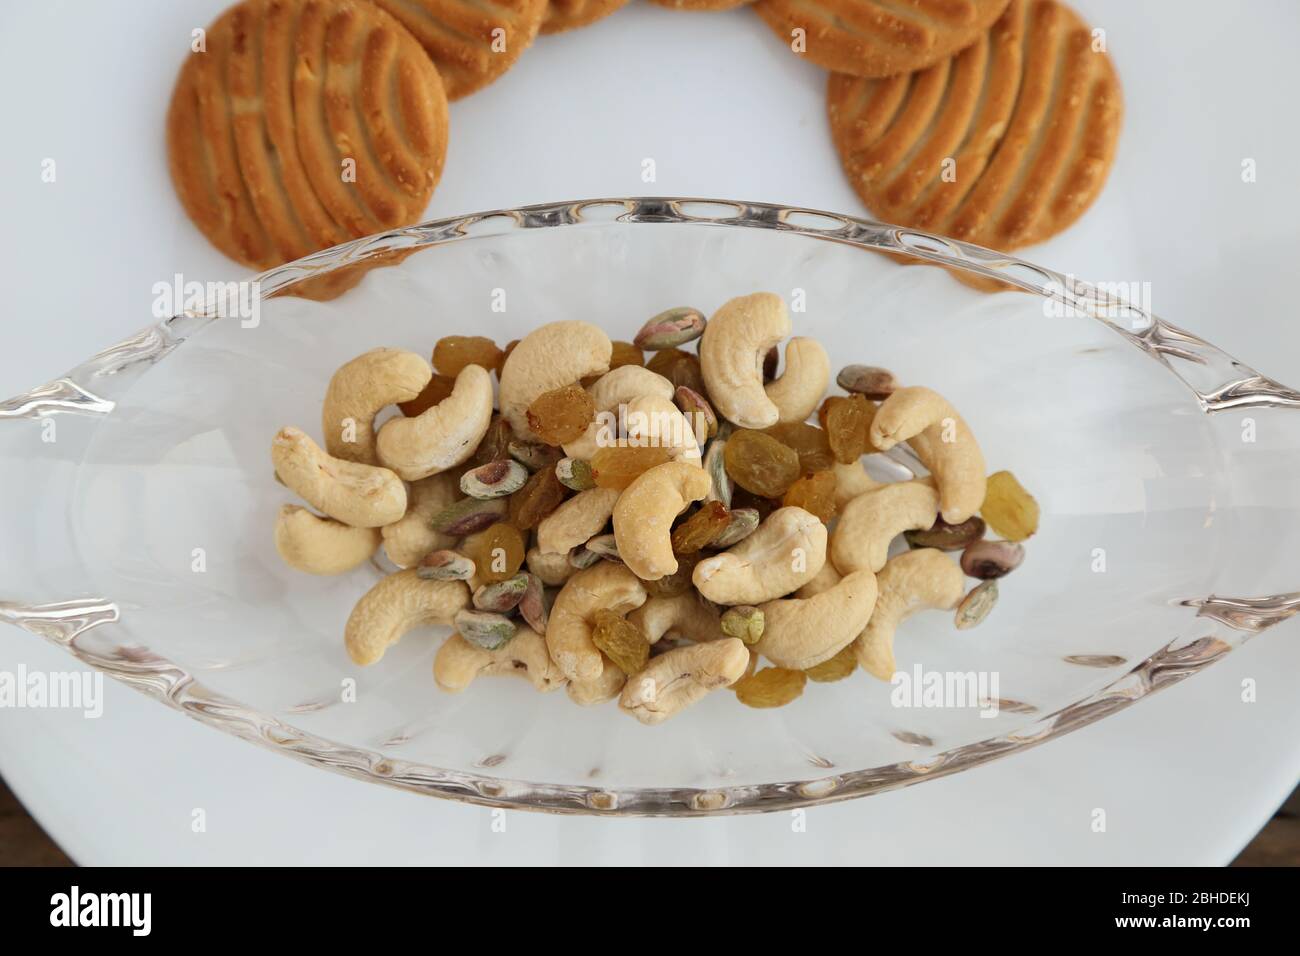 Kekse oder Kekse mit trockenen Früchten. Gesunde Ernährung. Stockfoto